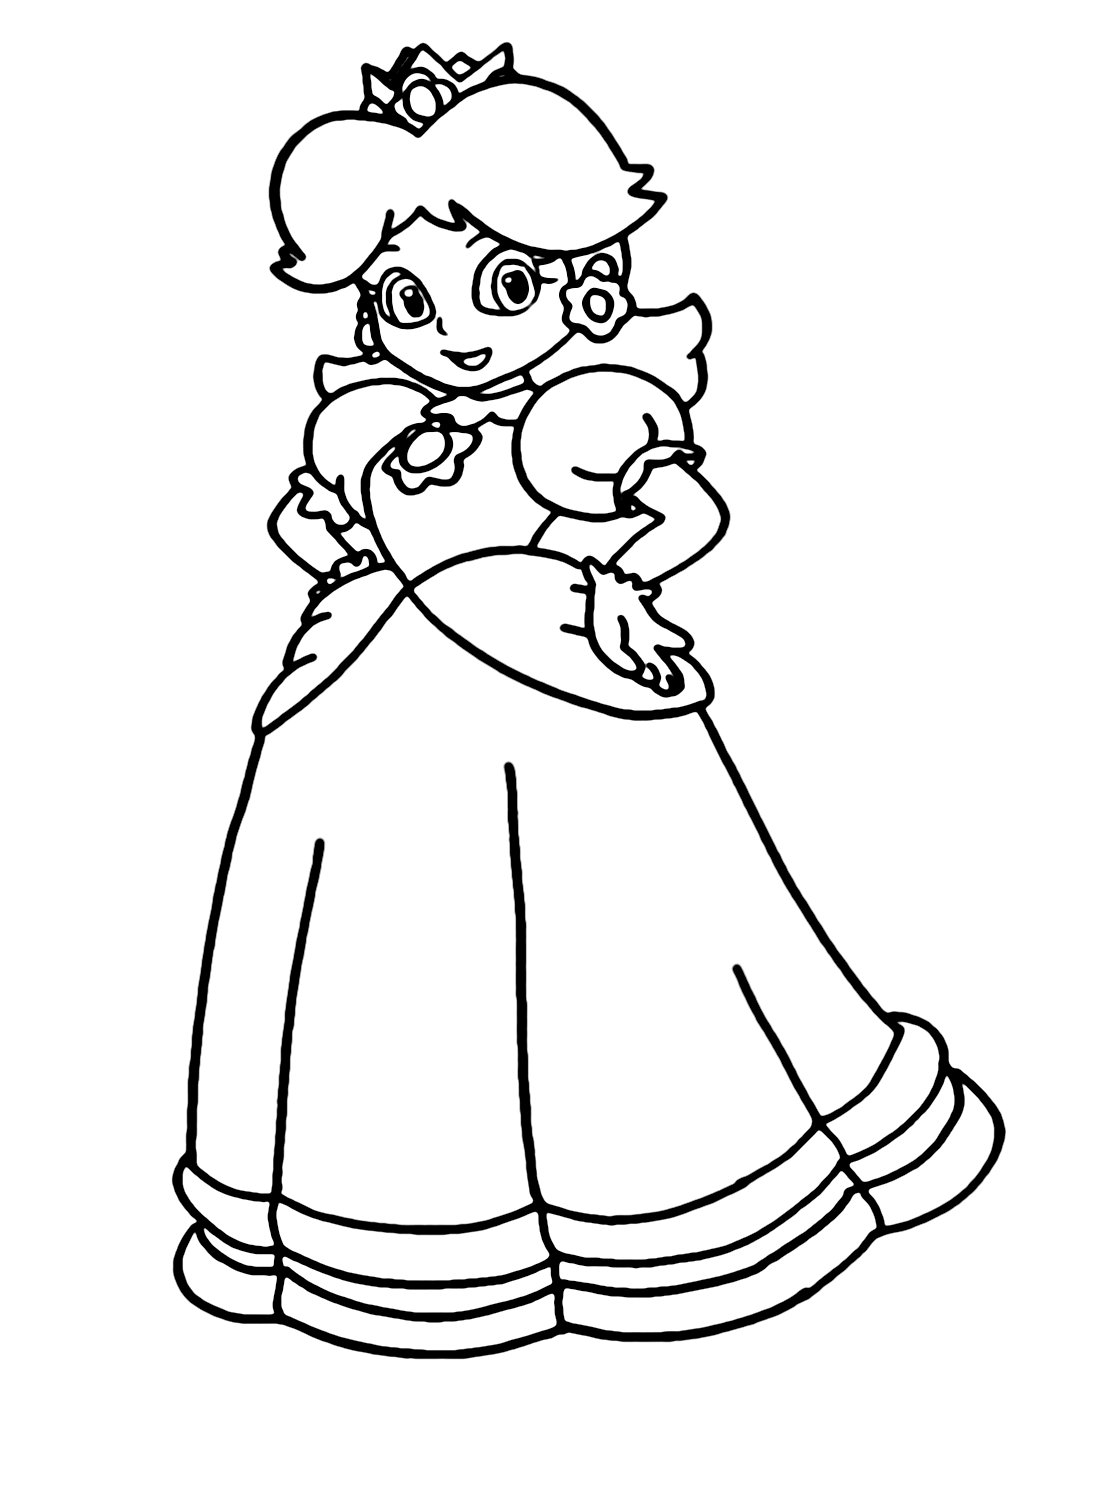 Prinzessin Daisy Mario Bros. von Prinzessin Daisy